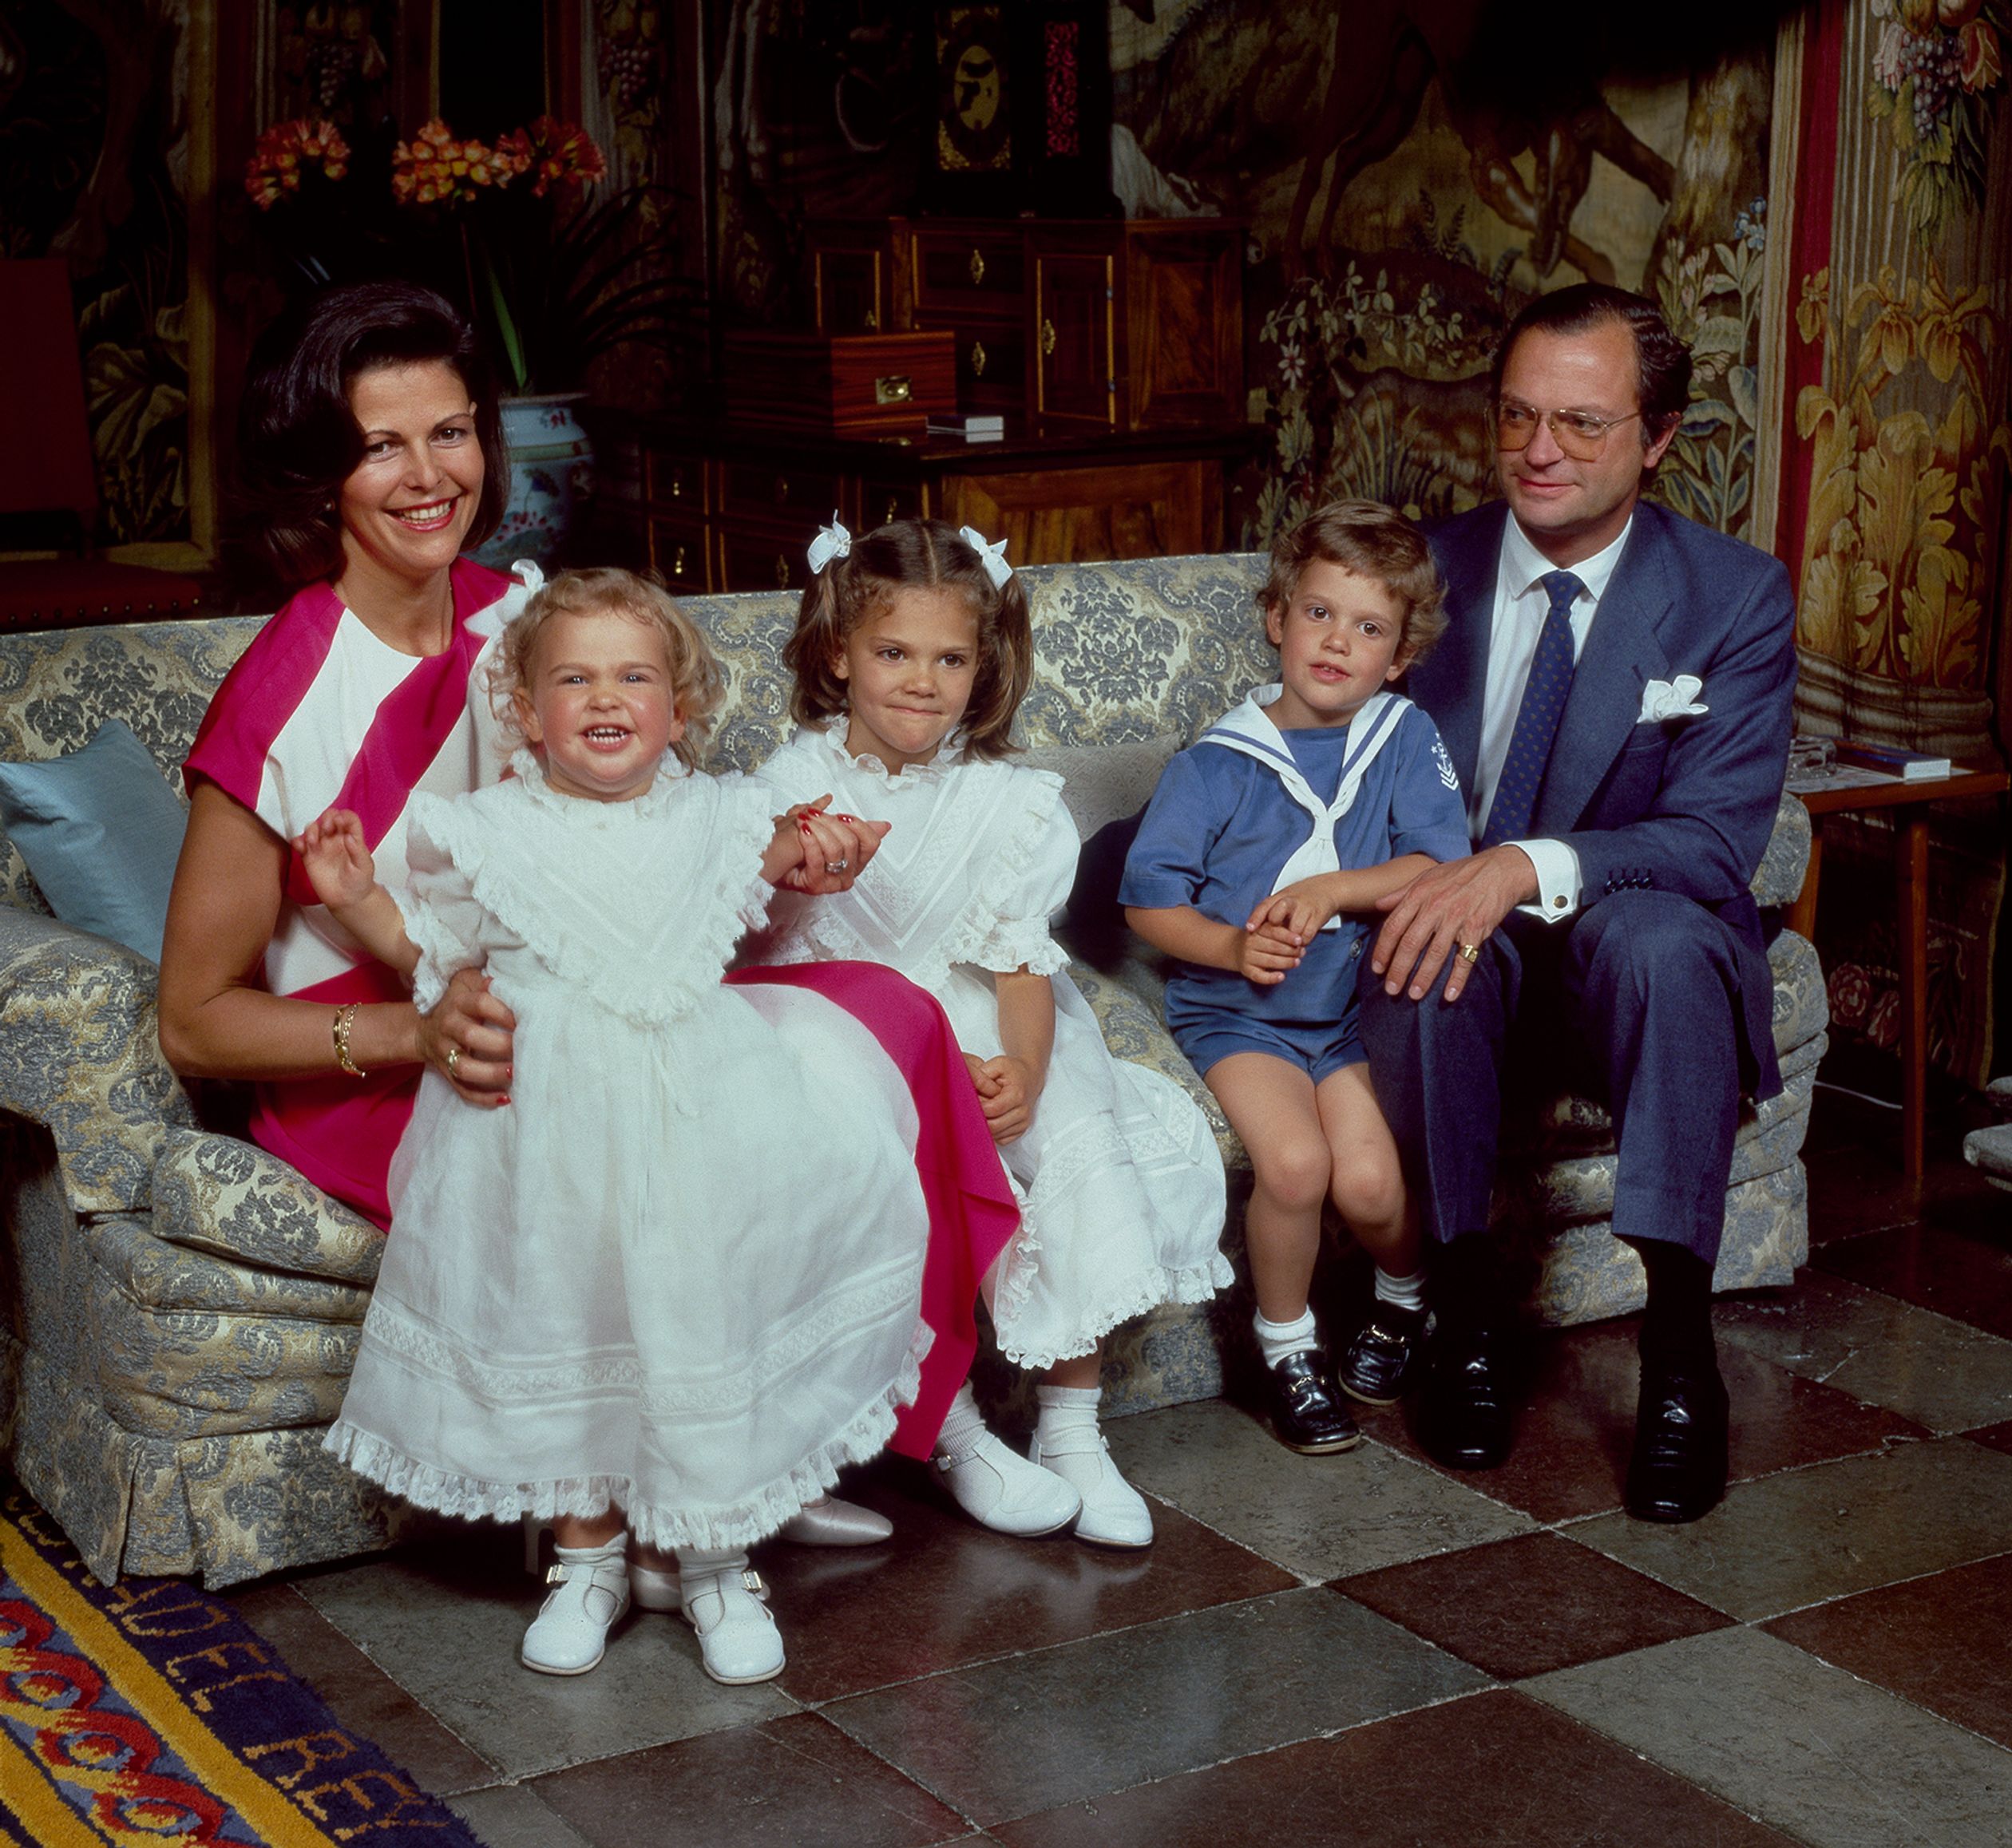 Het paar krijgt drie kinderen: Victoria (1977), Carl Philip (1979) en Madeleine (1982). Deze foto